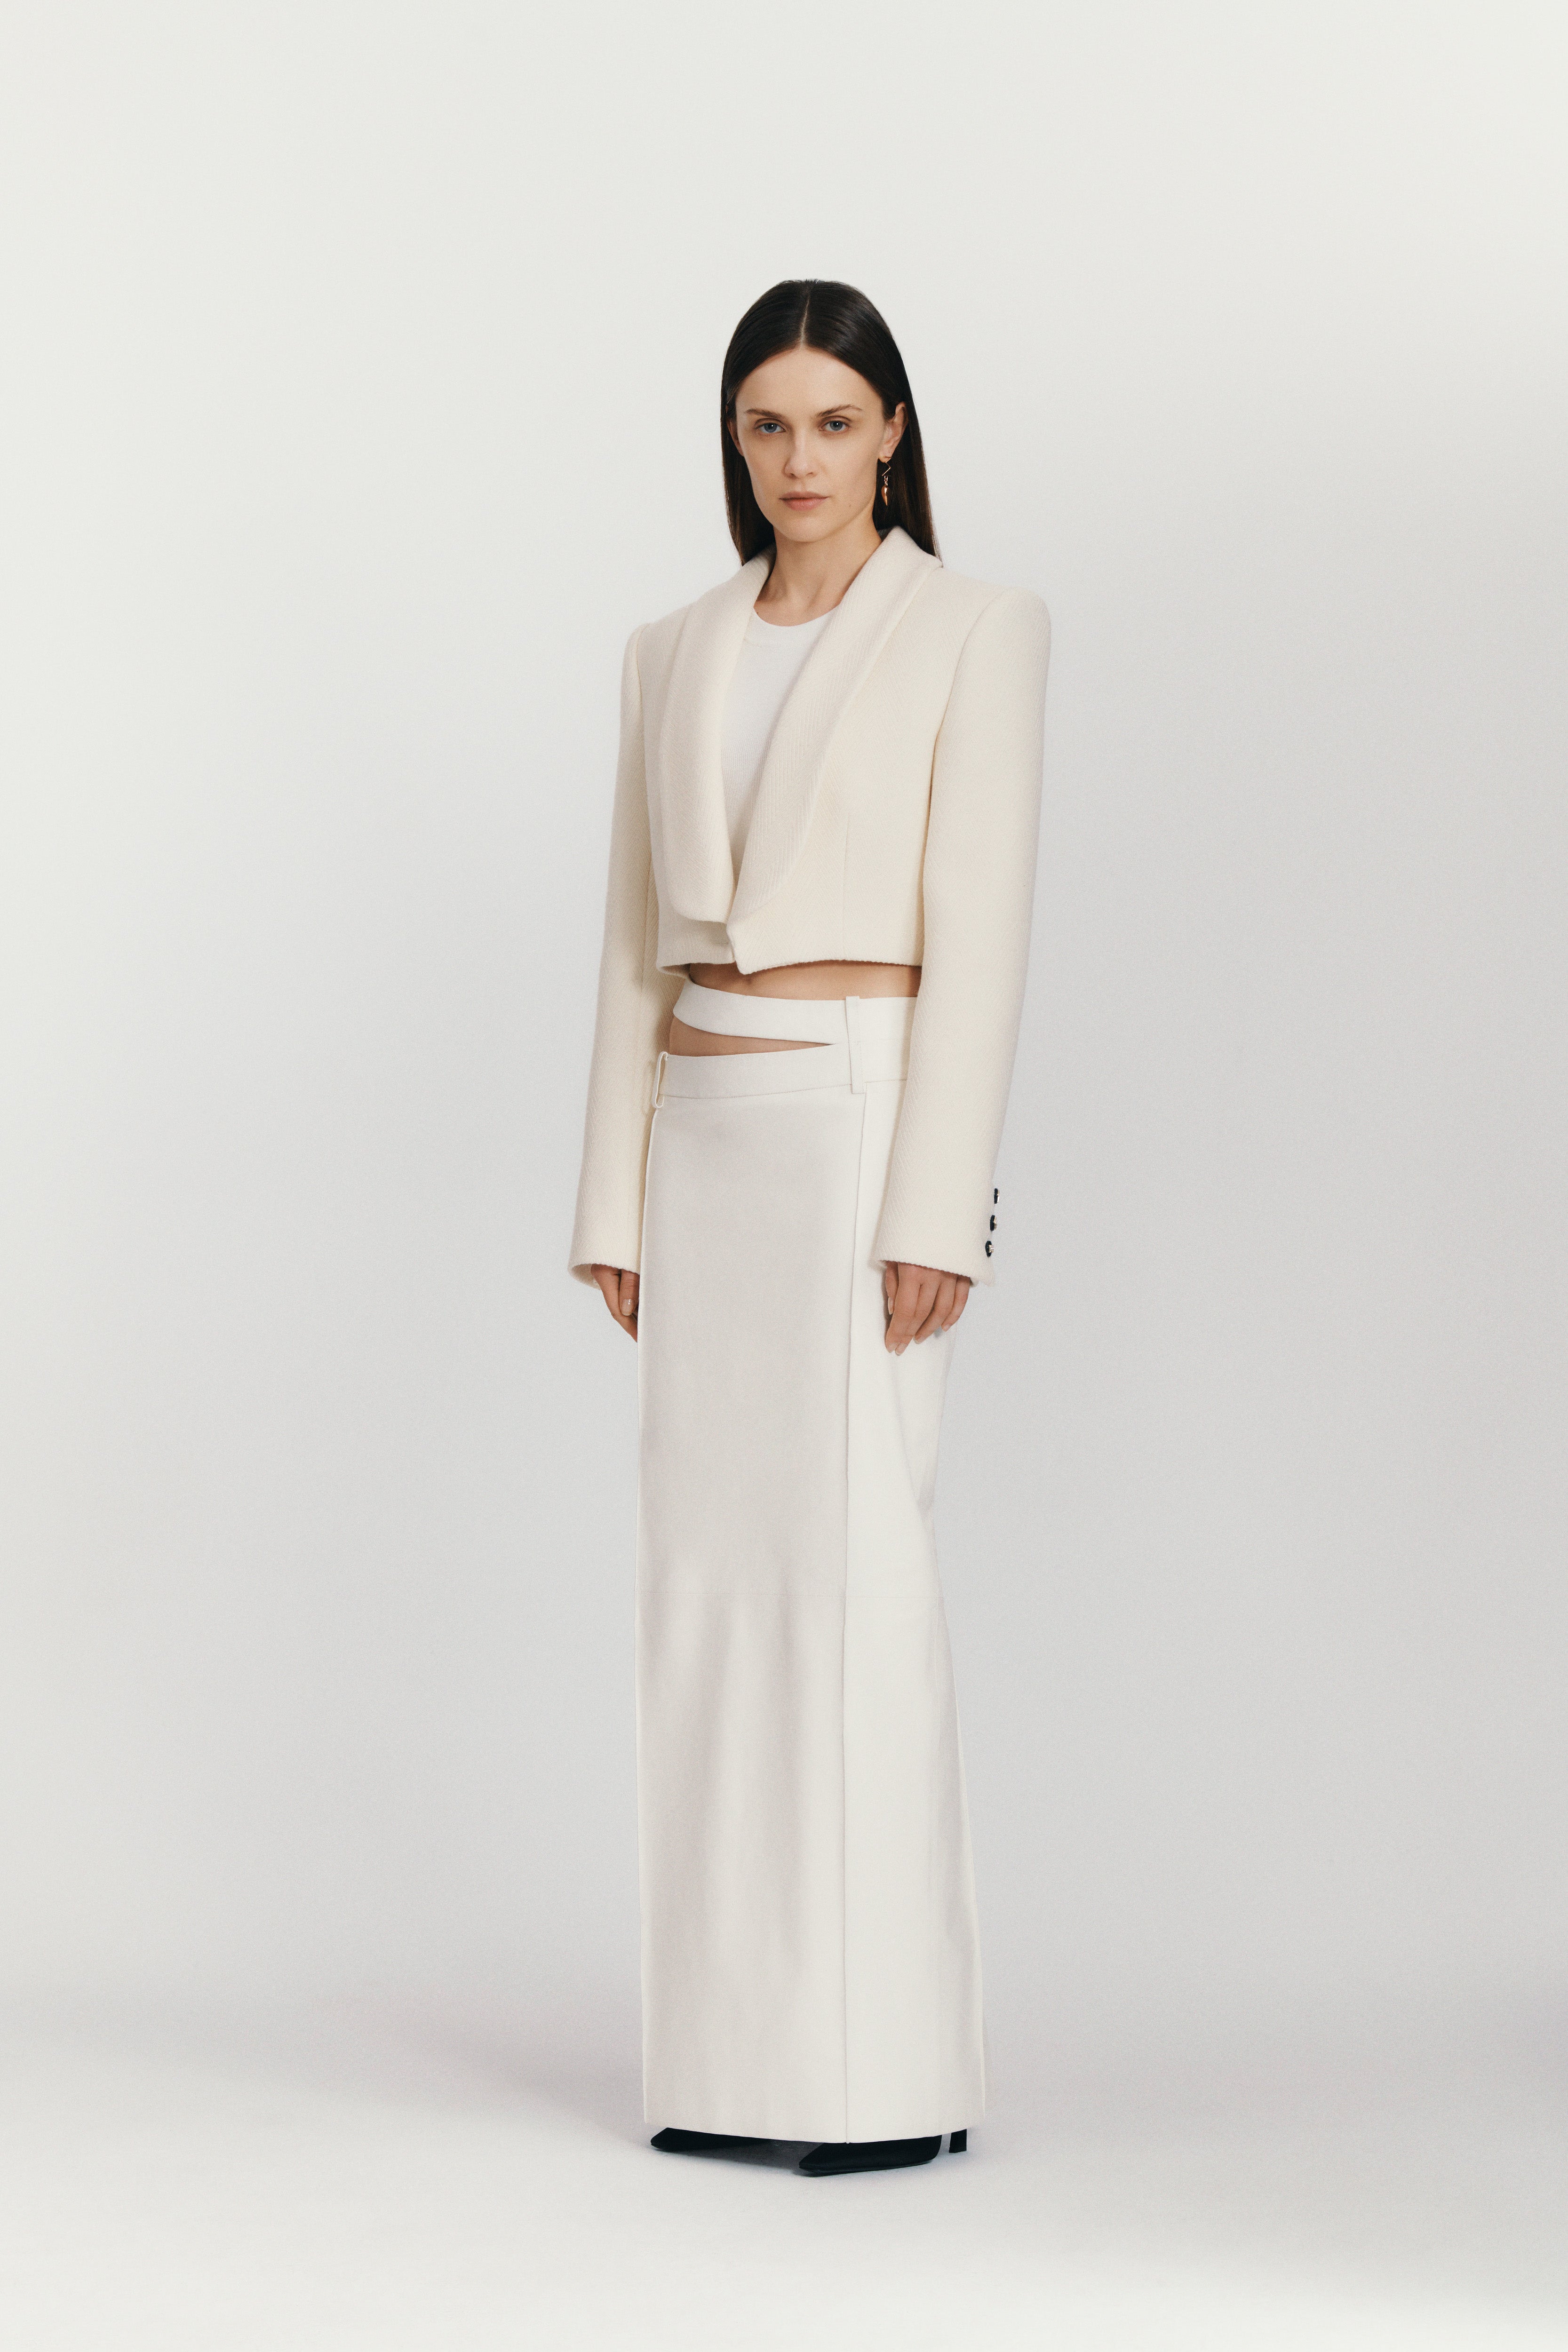 Ararat Long Skirt White